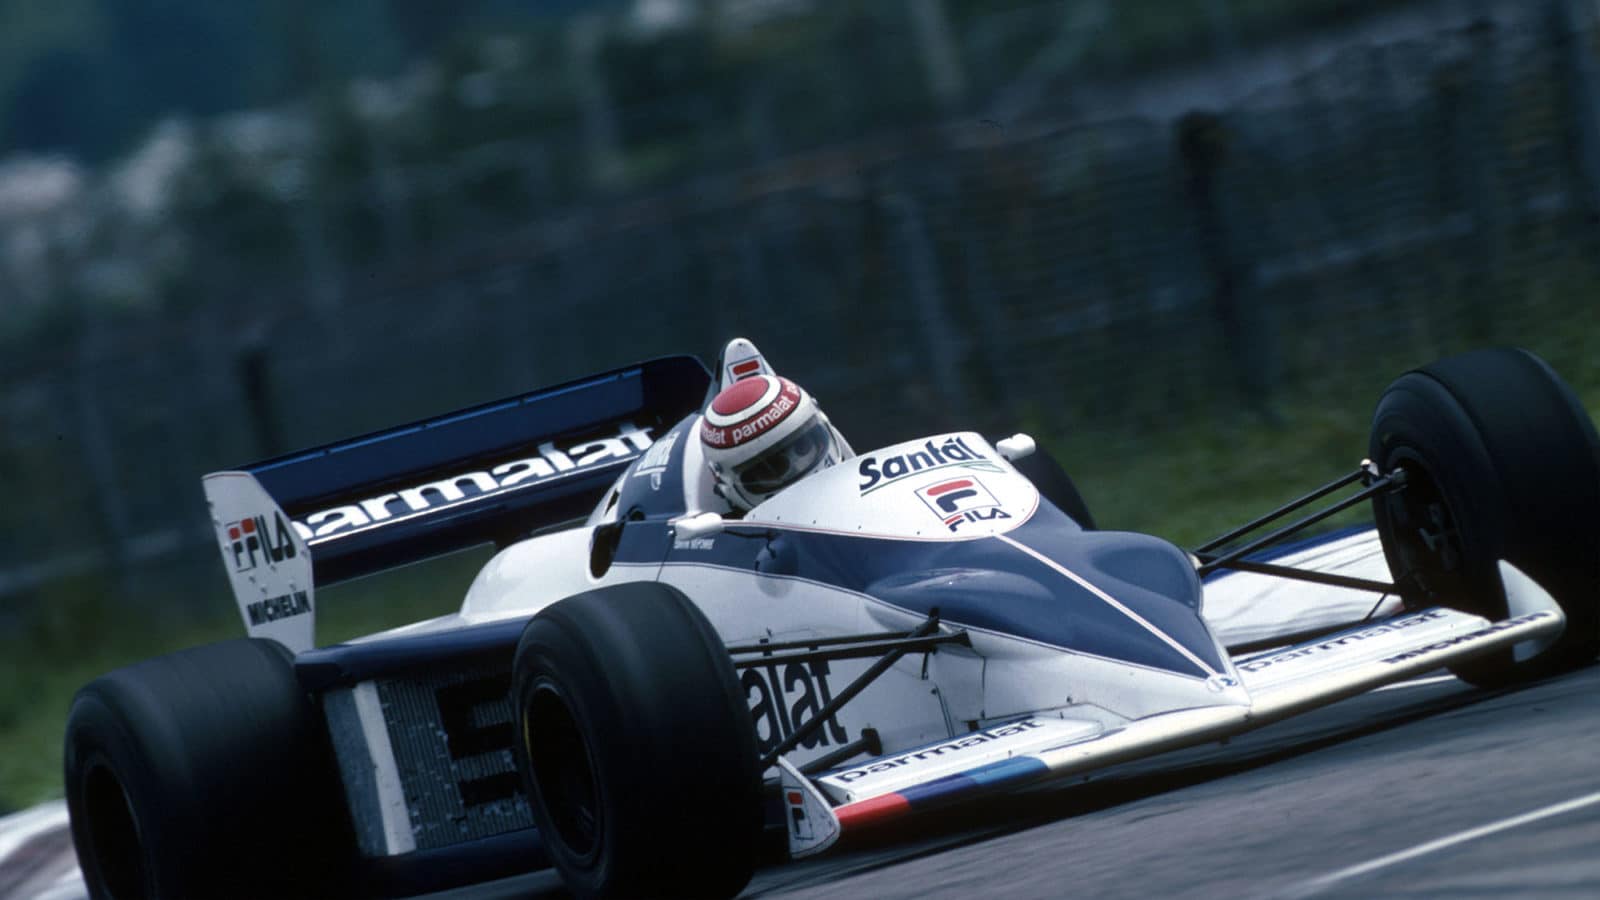 https://motorsportmagazine.b-cdn.net/wp-content/uploads/2014/07/3-1983-Brazilian-GP-Brabham-Nelson-Piquet-1600x900.jpg